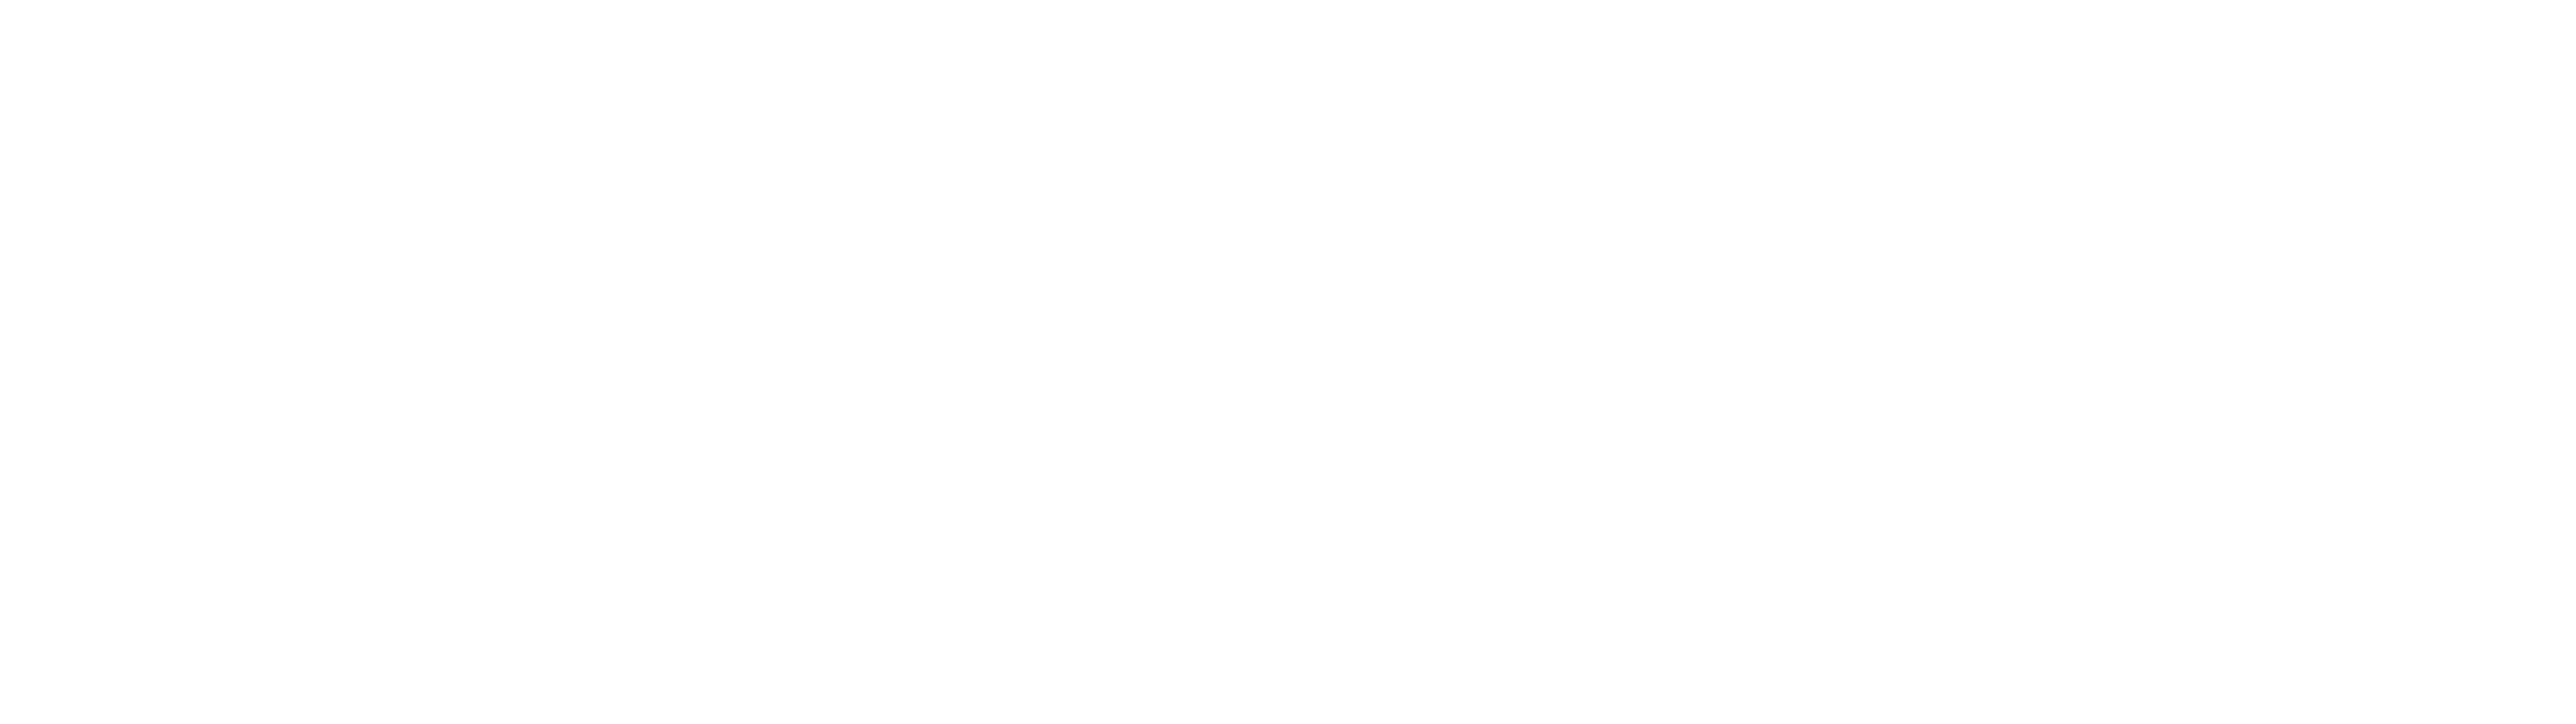 Castrum Legions